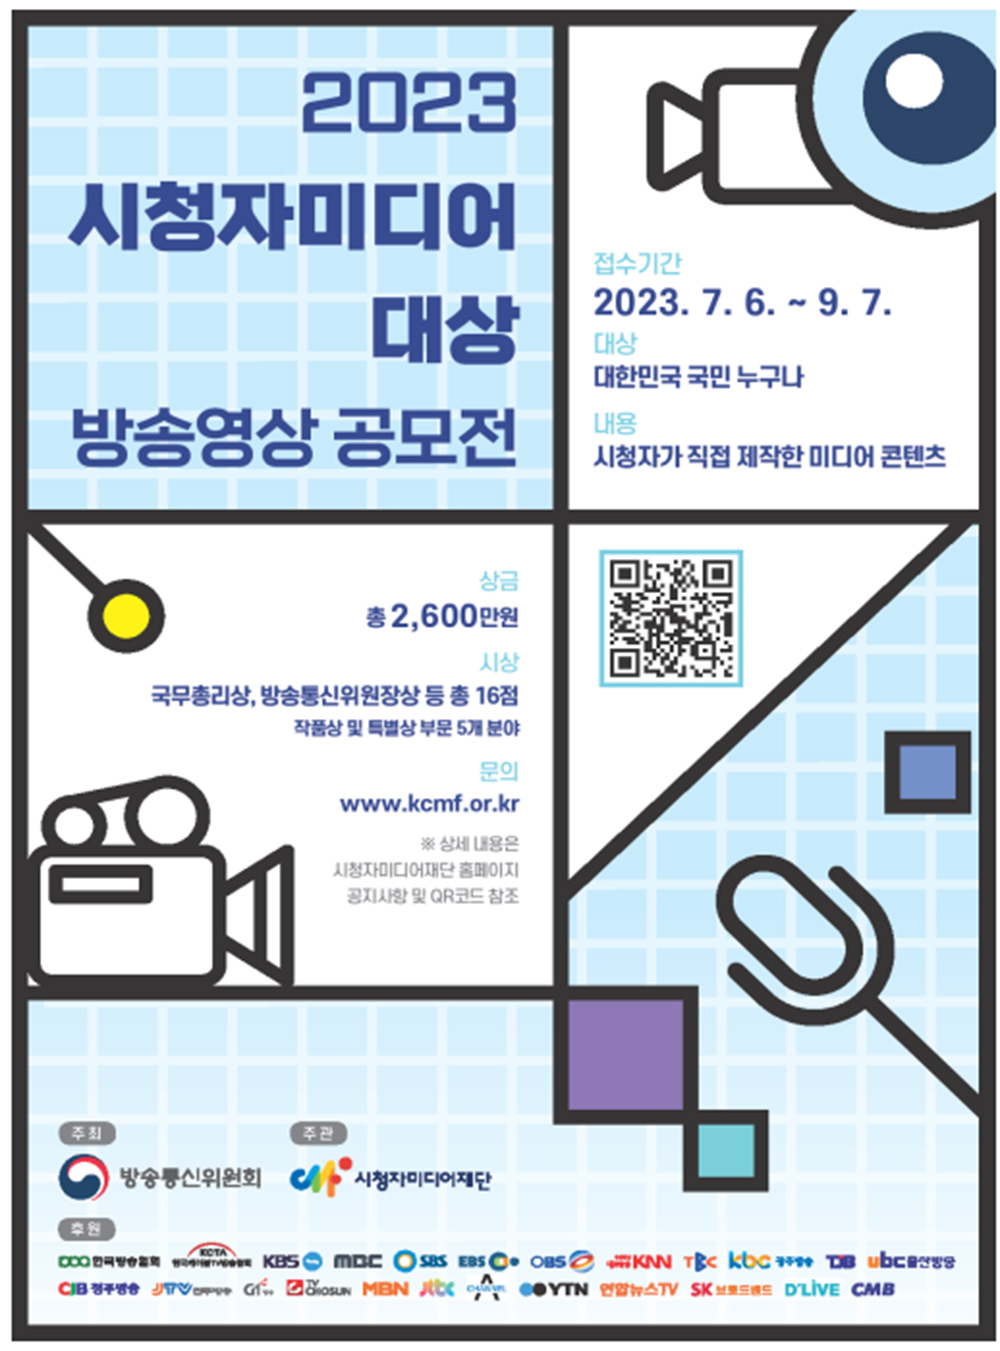 2023 시청자미디어대상 방송영상 공모전 포스터